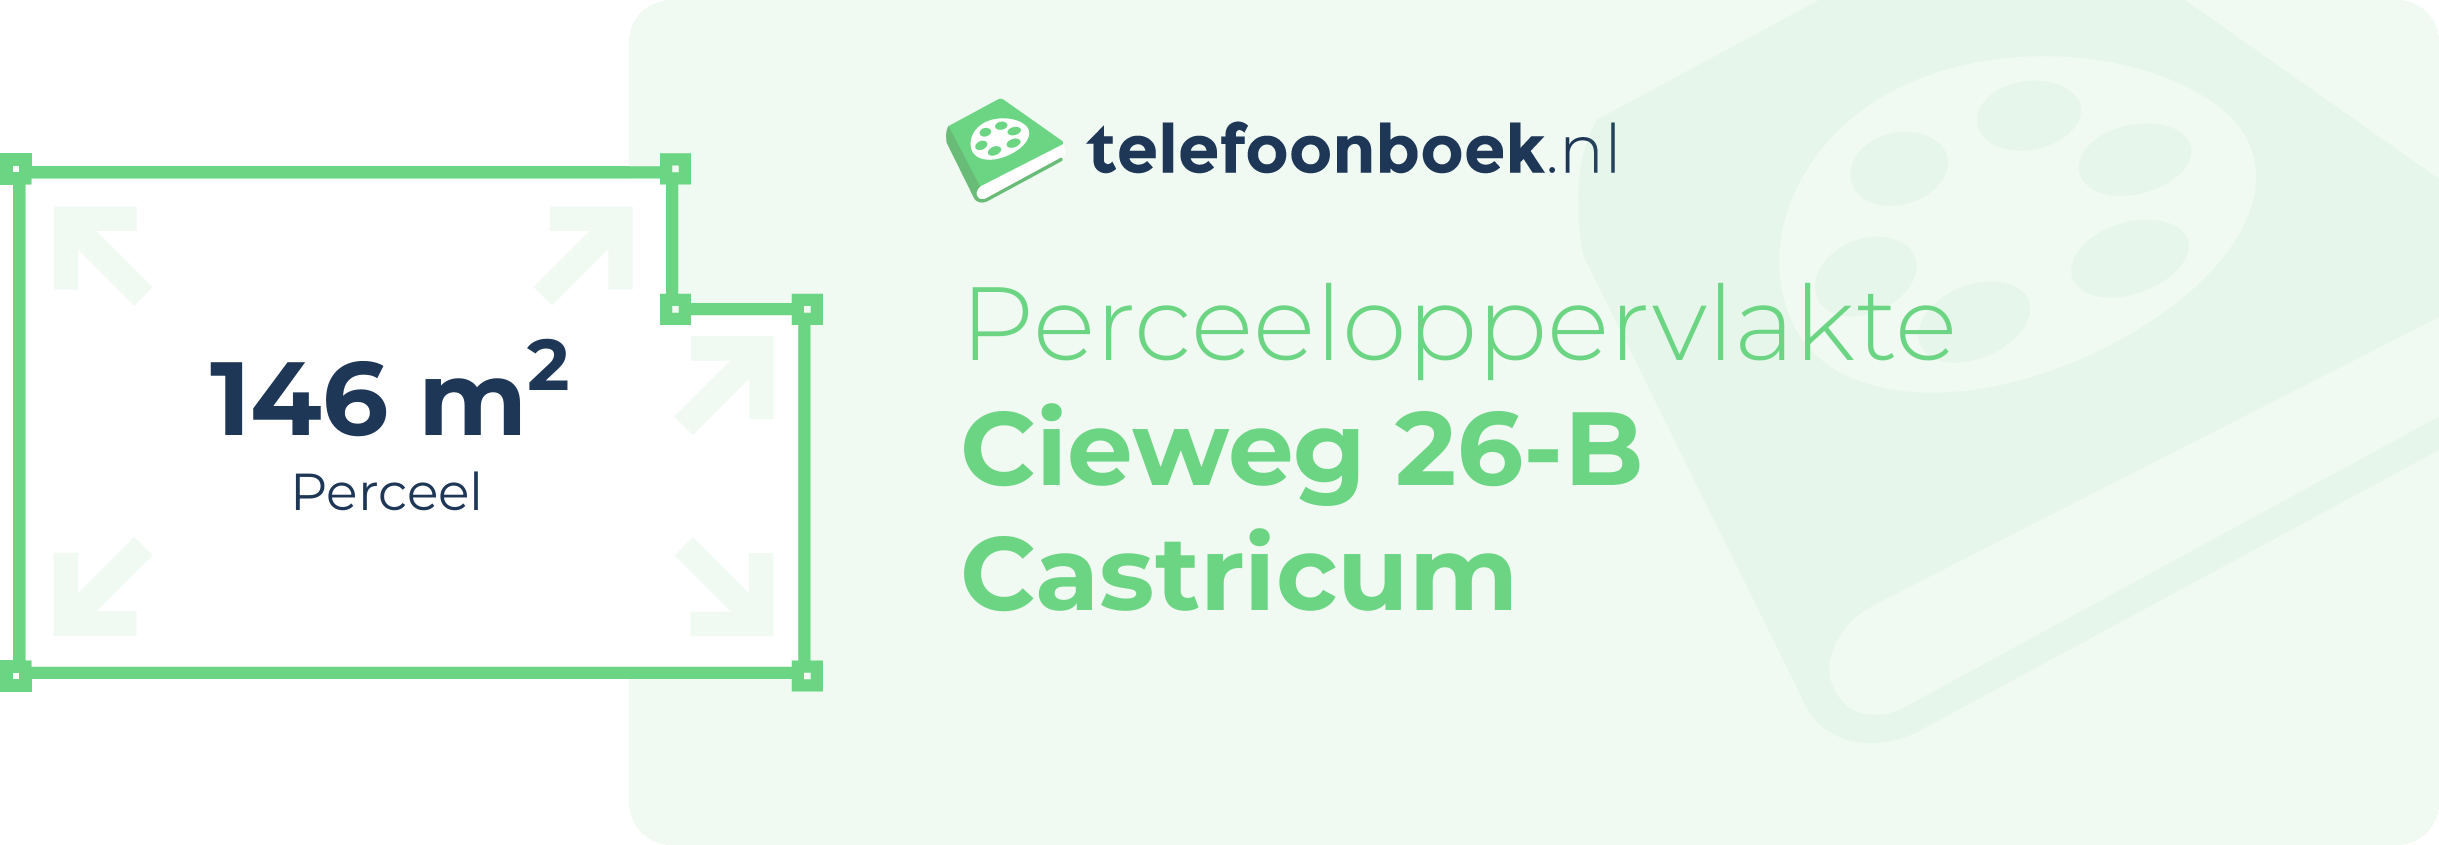 Perceeloppervlakte Cieweg 26-B Castricum